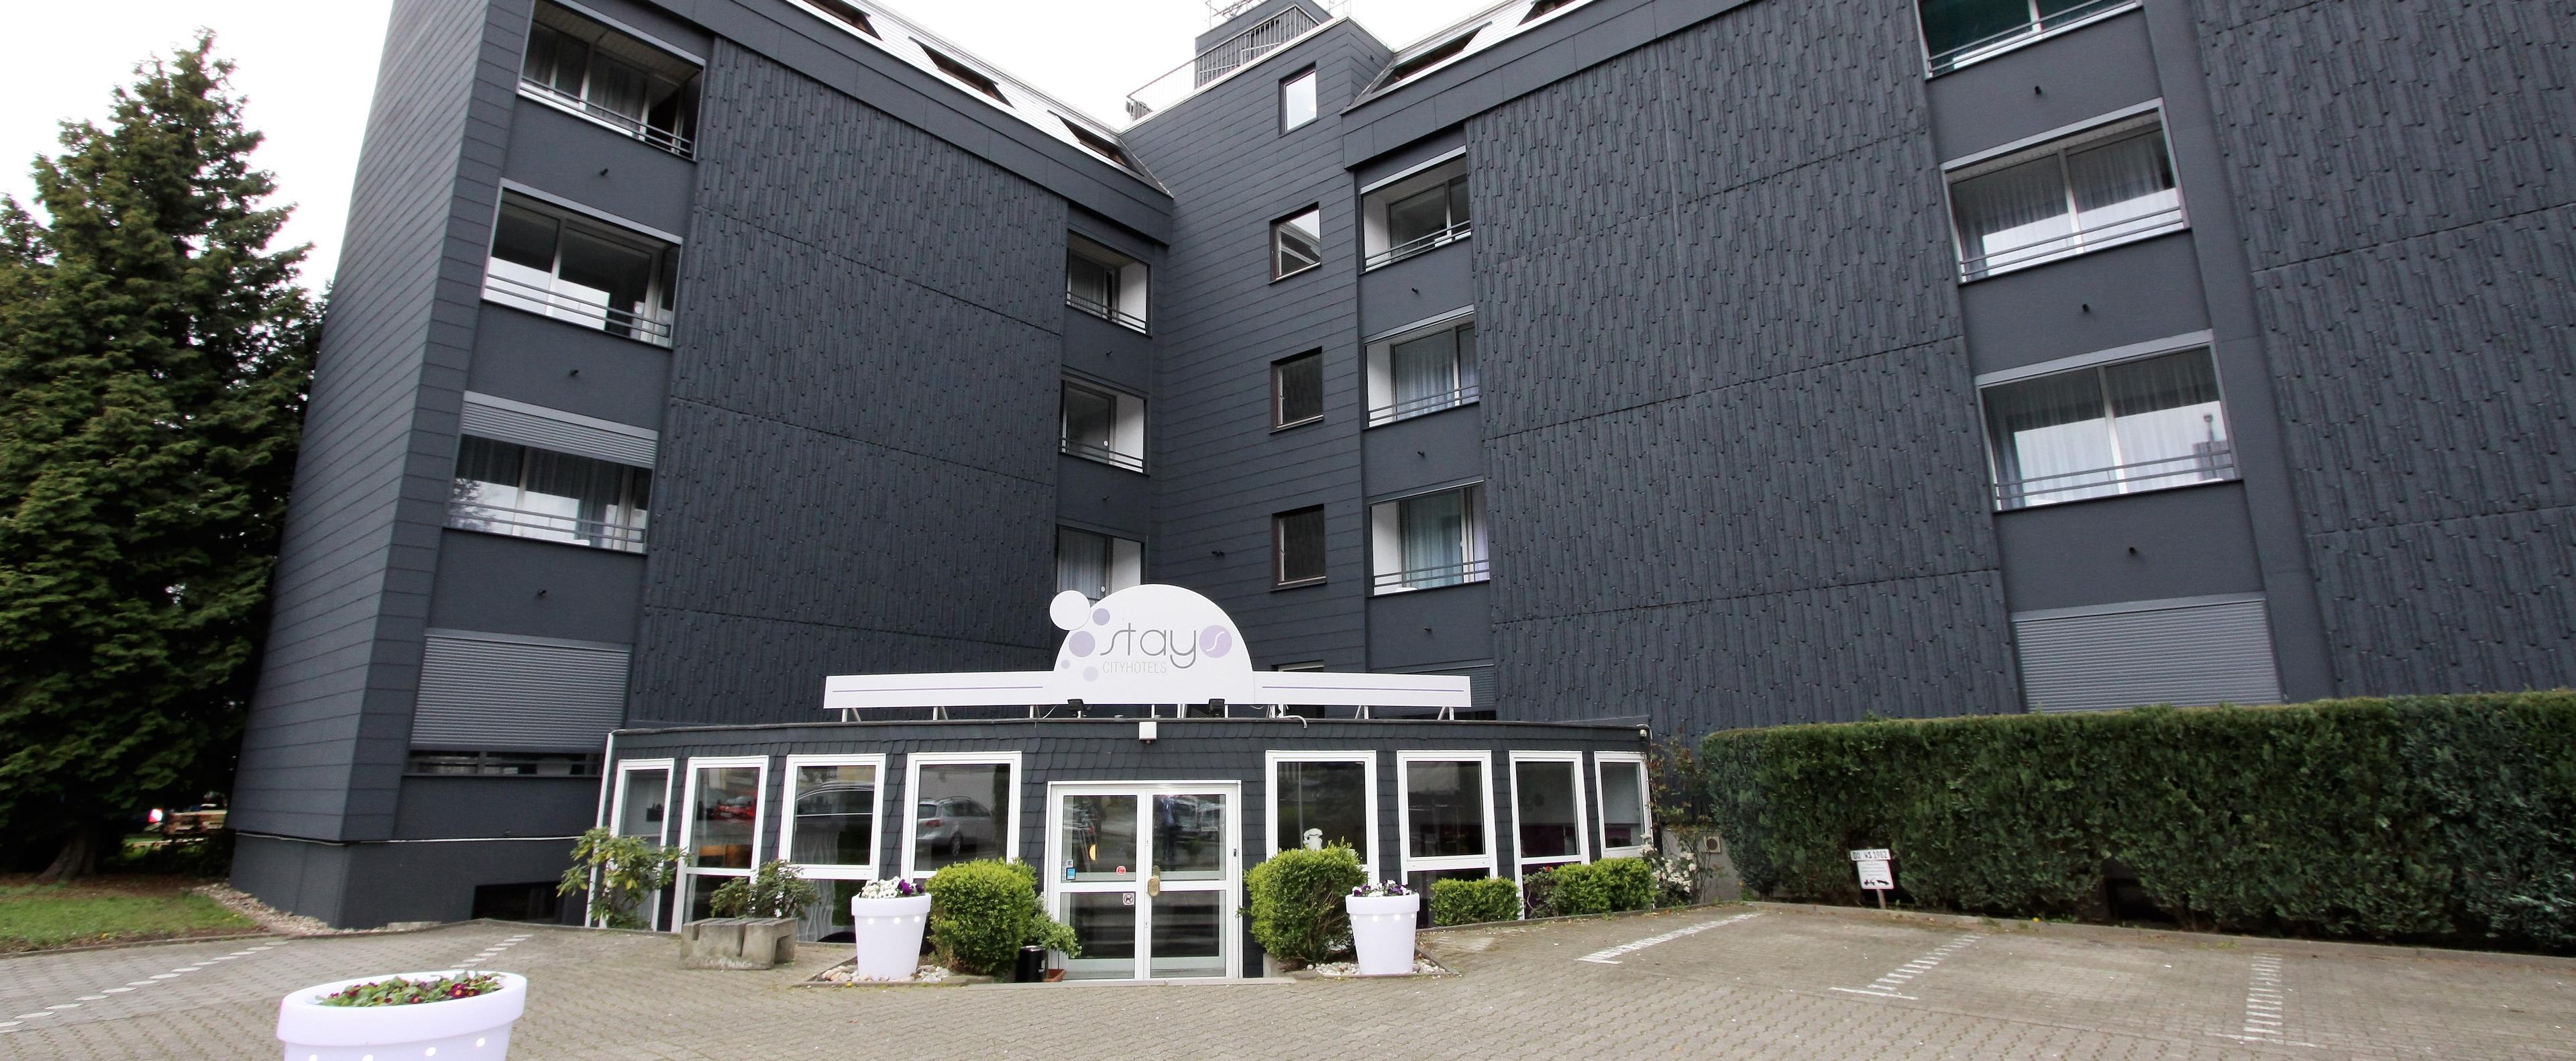 Stays Design Hotel Dortmund in Dortmund, Germany